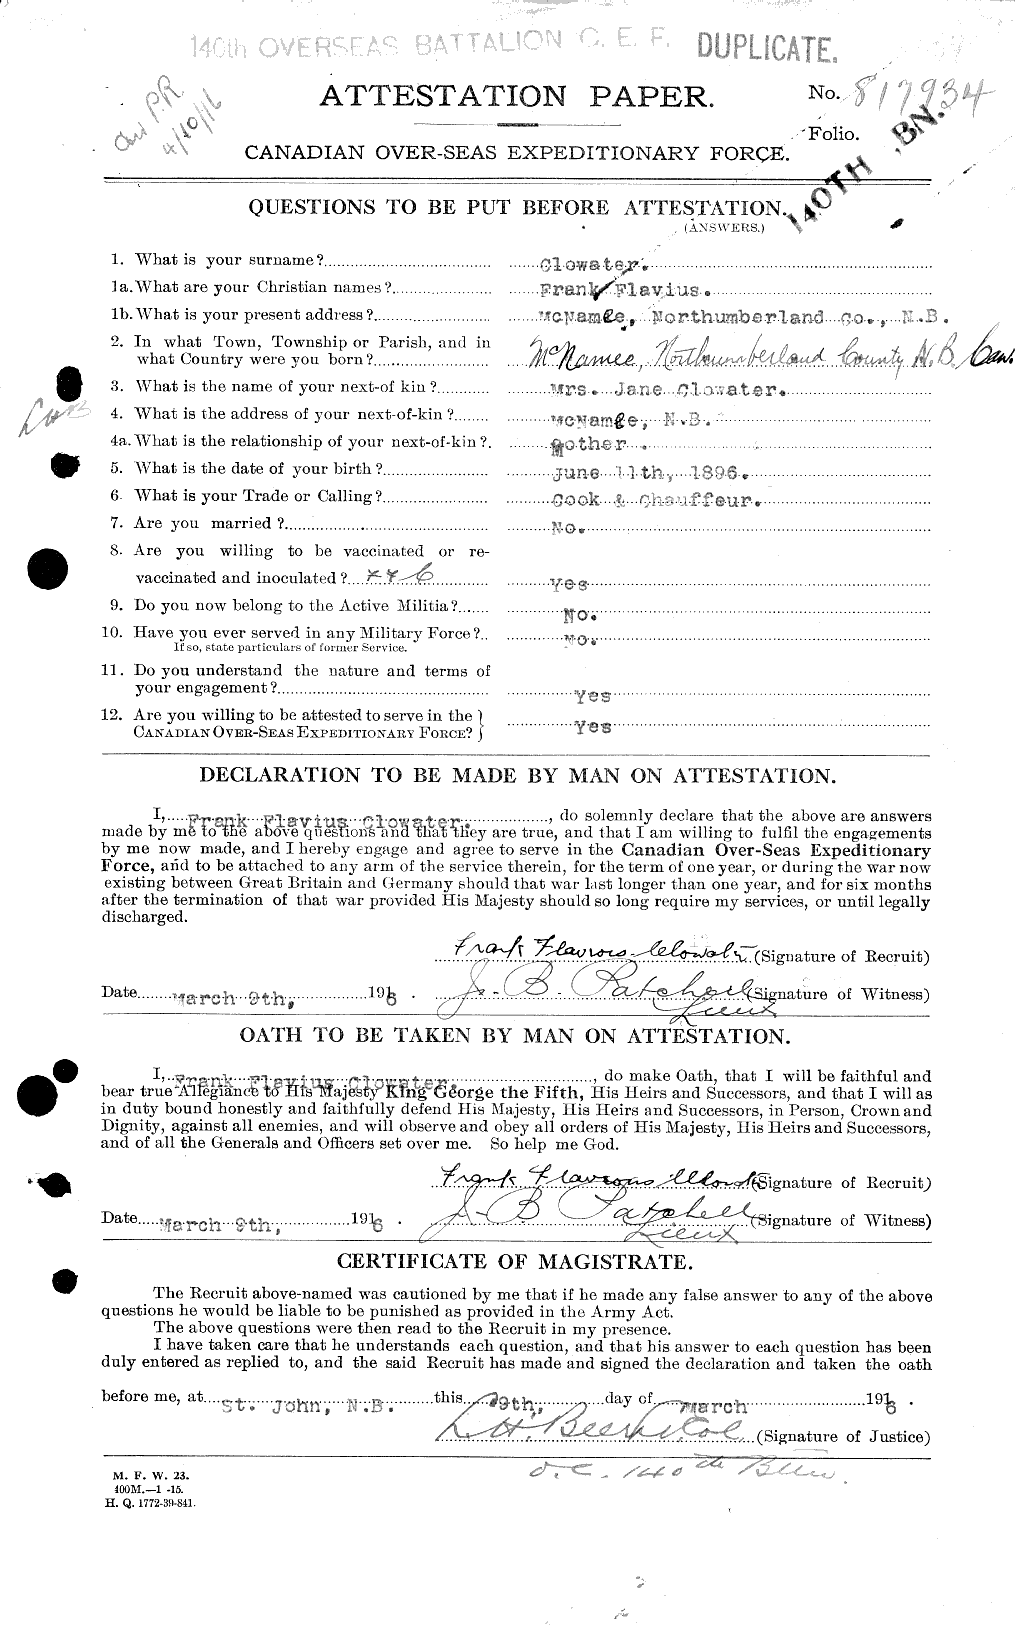 Dossiers du Personnel de la Première Guerre mondiale - CEC 026240a